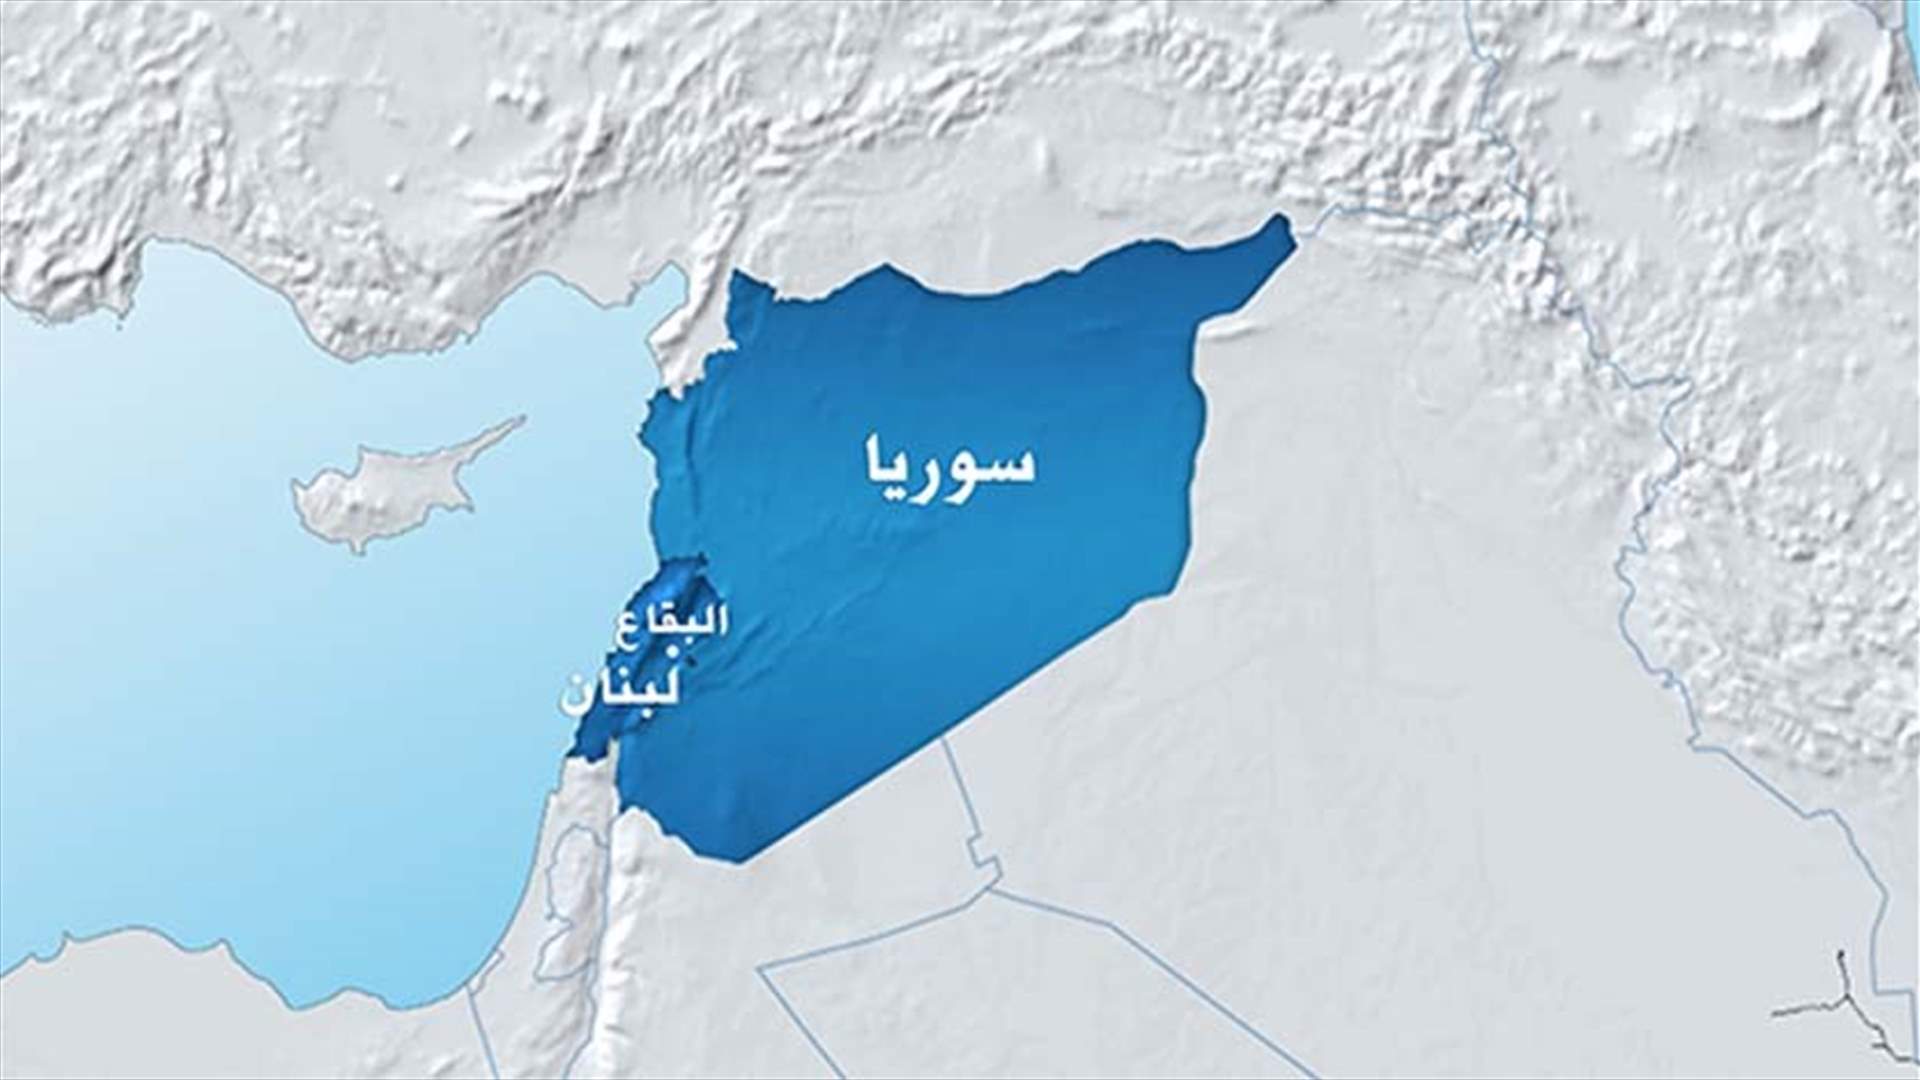 إطلاق نار في بلدة القصر بسبب خلاف على تهريب سيارات إلى سوريا